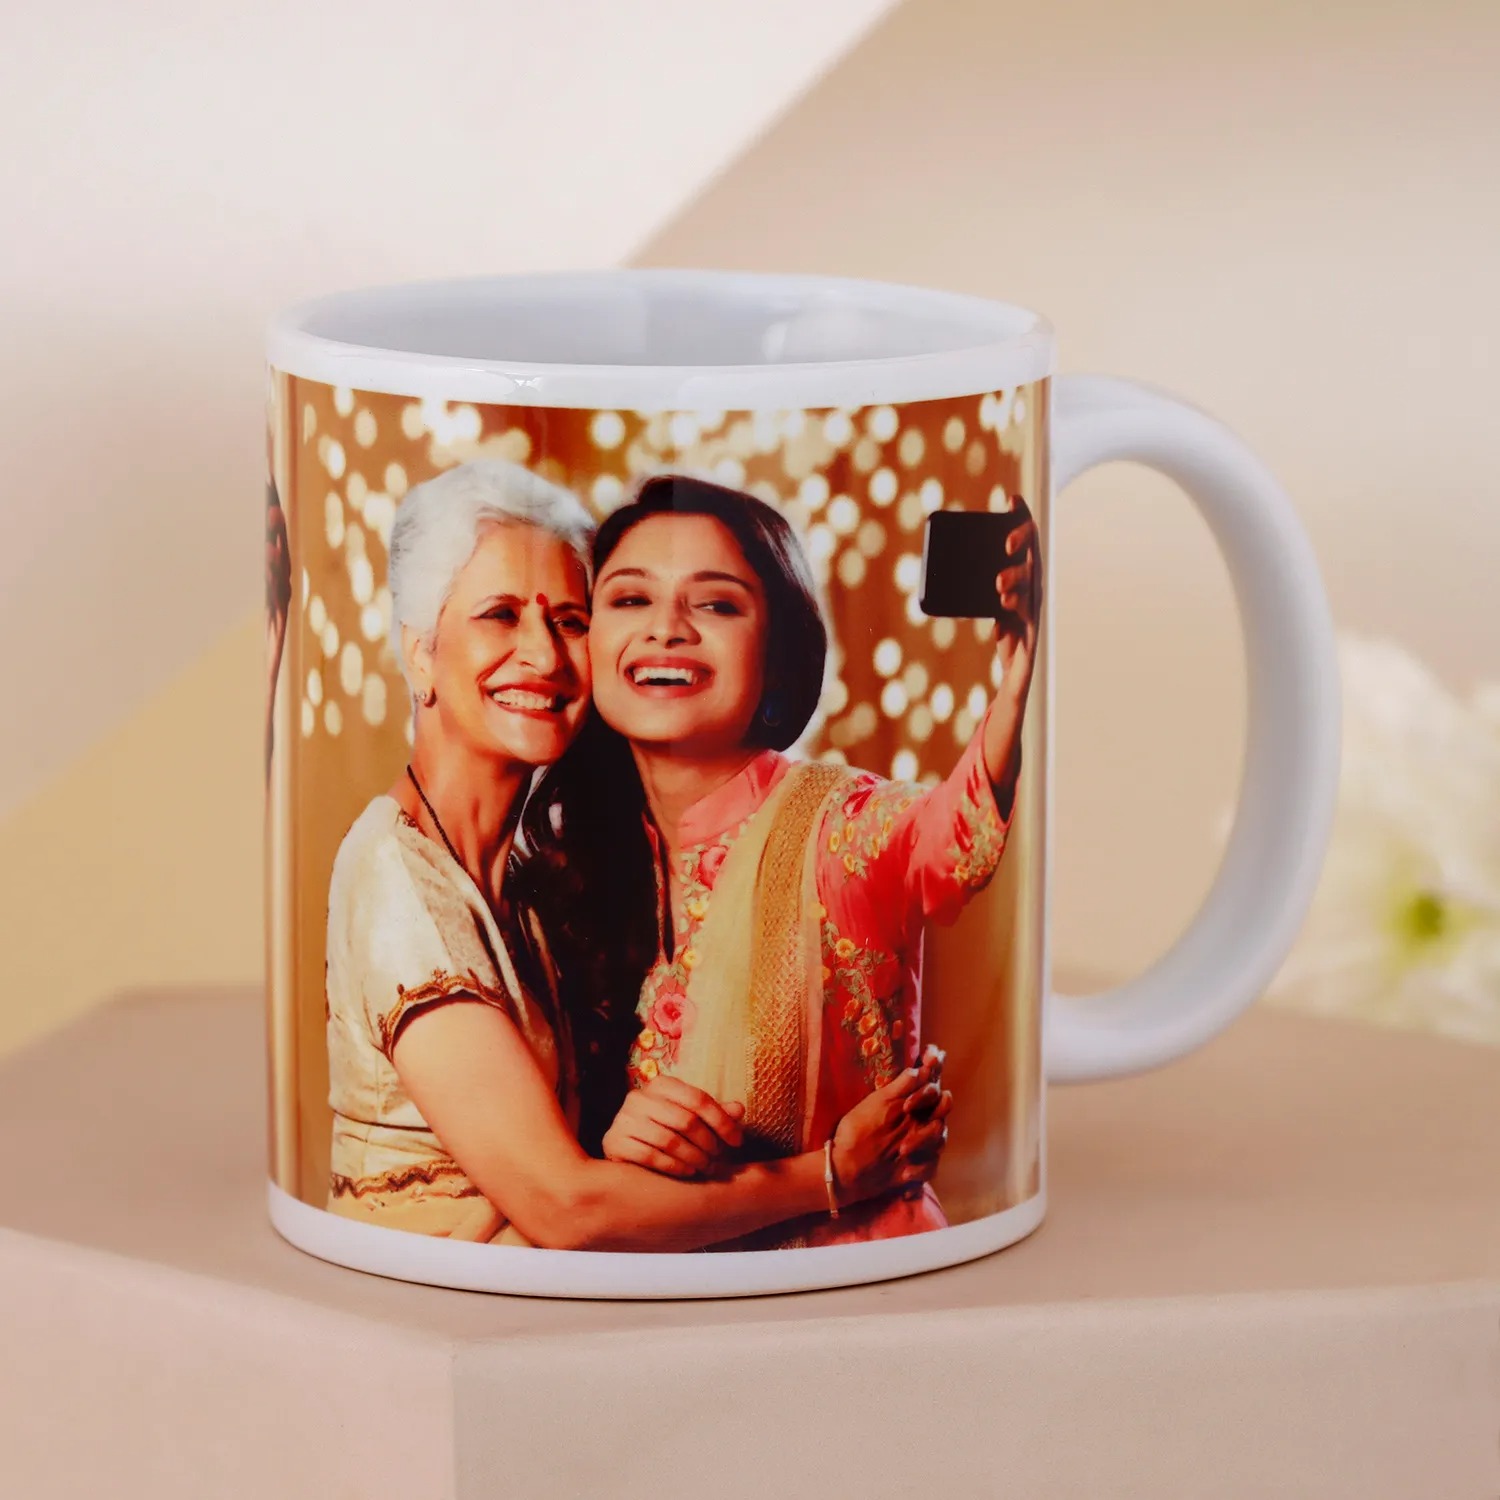 mug for her